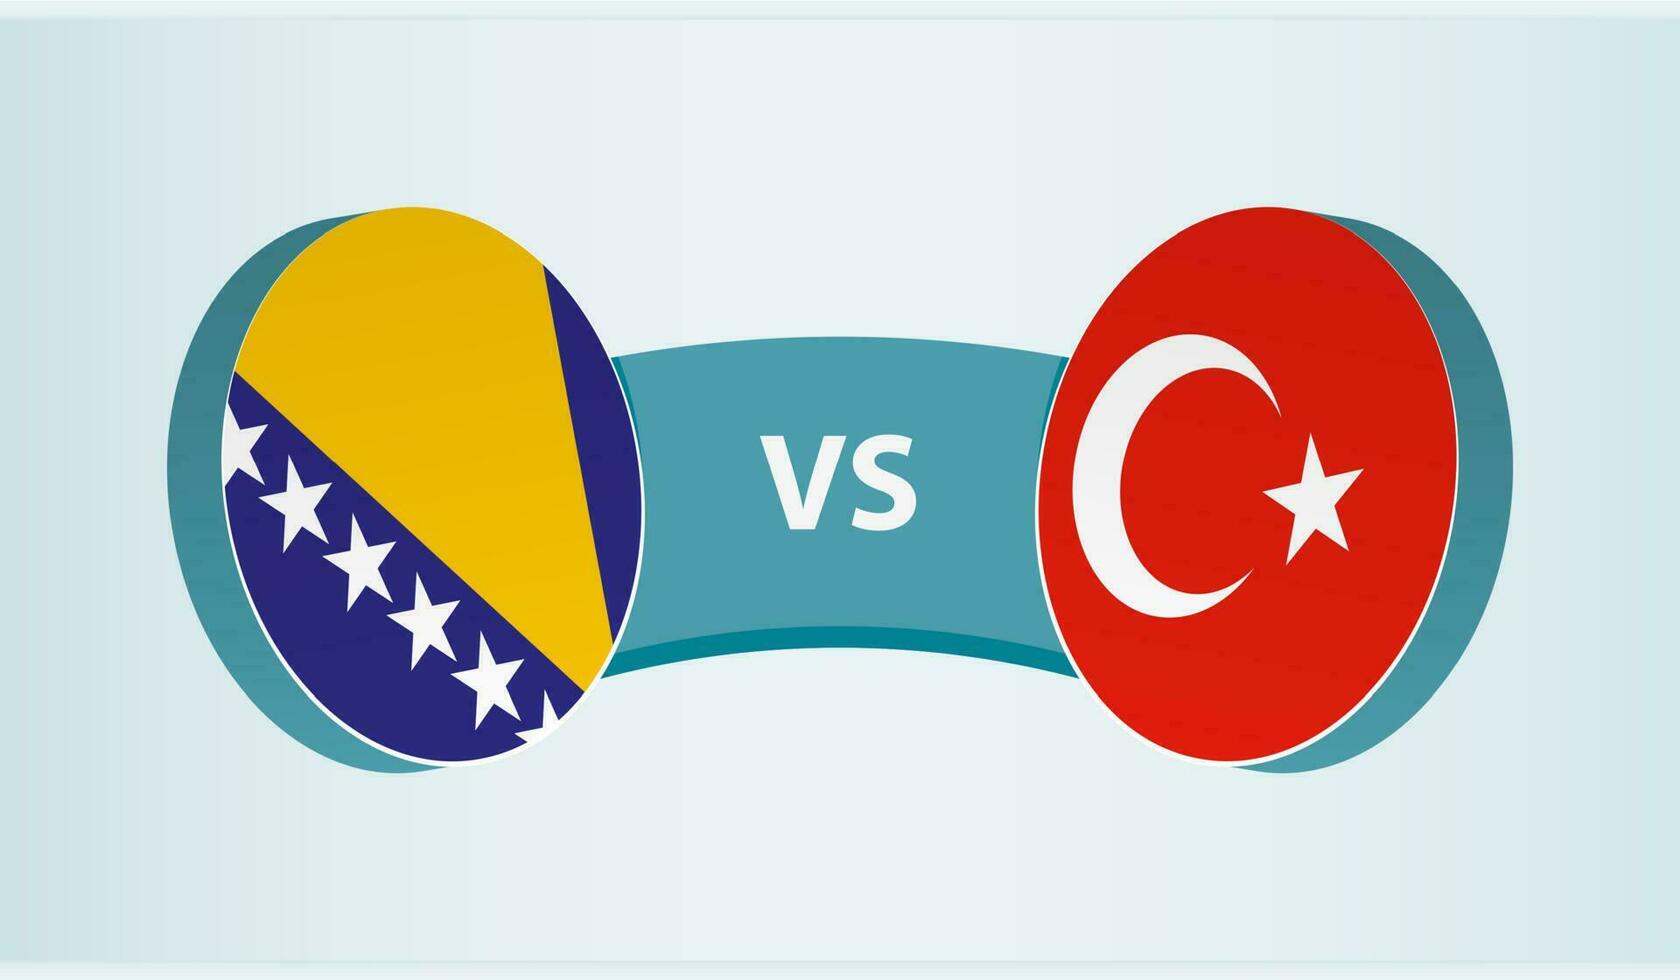 Bosnie et herzégovine contre Turquie, équipe des sports compétition concept. vecteur